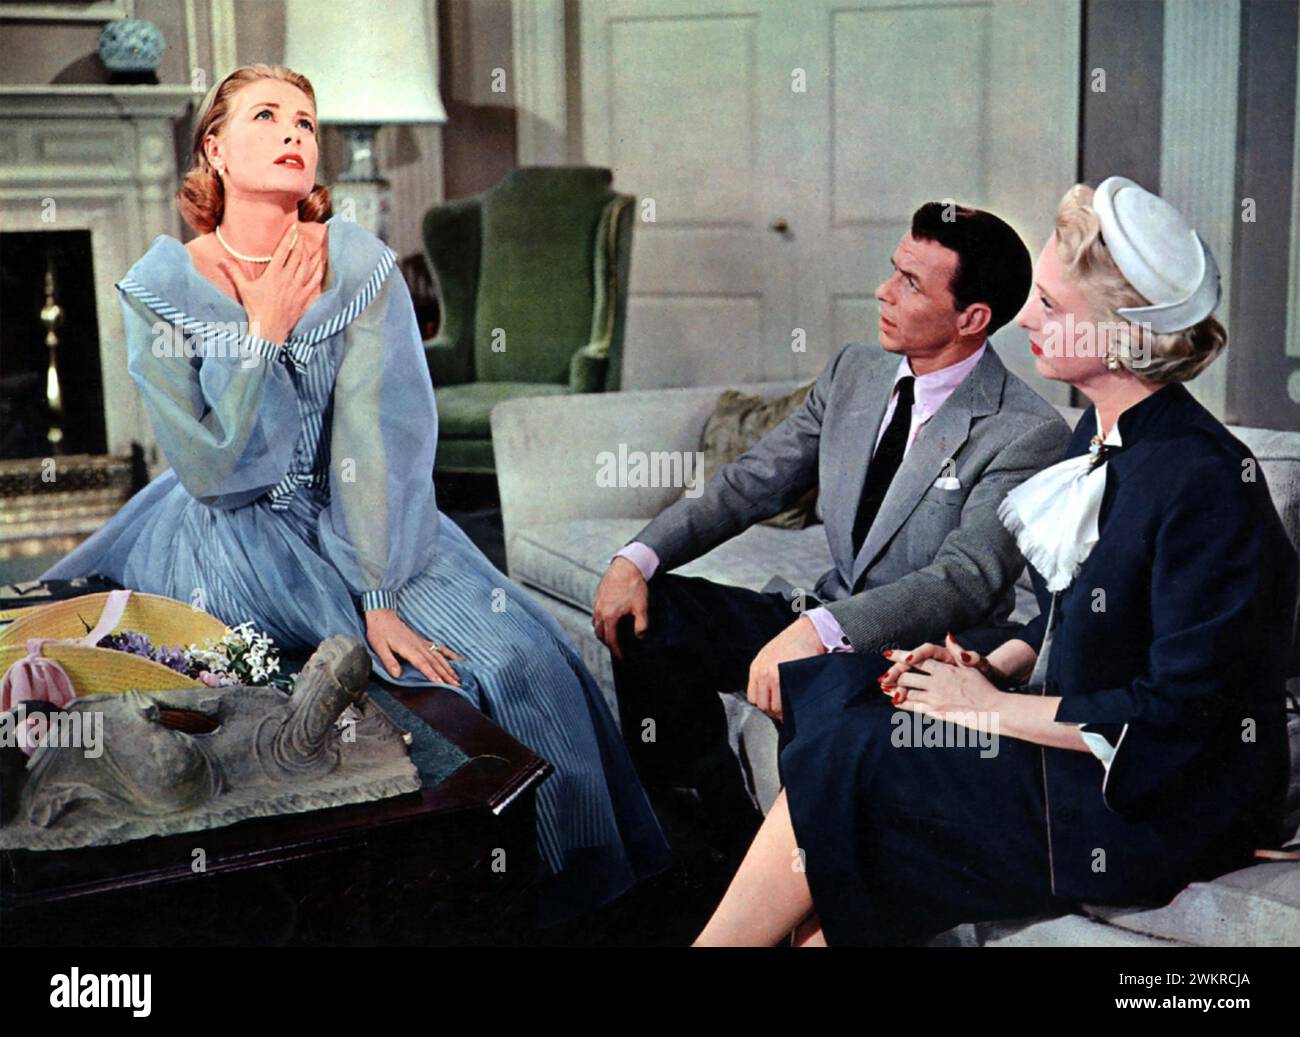 HIGH SOCIETY 1956 MGM film avec de gauche à droite : Grace Kelly dans le rôle de Tracy Lord, Frank Sinatra dans le rôle de Mike Connor et Celeste Holm dans le rôle de Liz Imbrie Banque D'Images